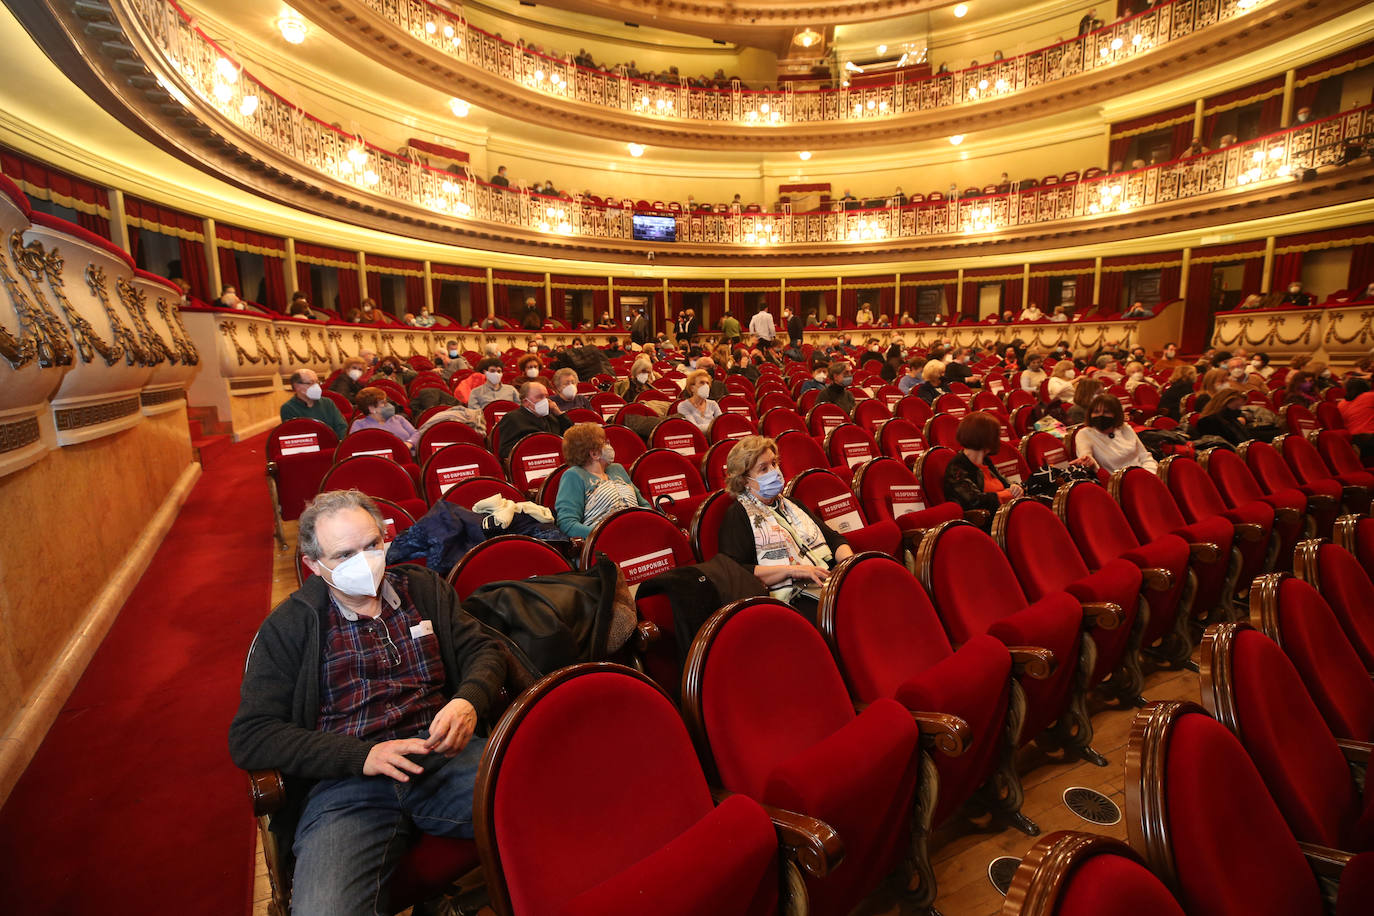 El público del teatro Campoamor durante la pandemia